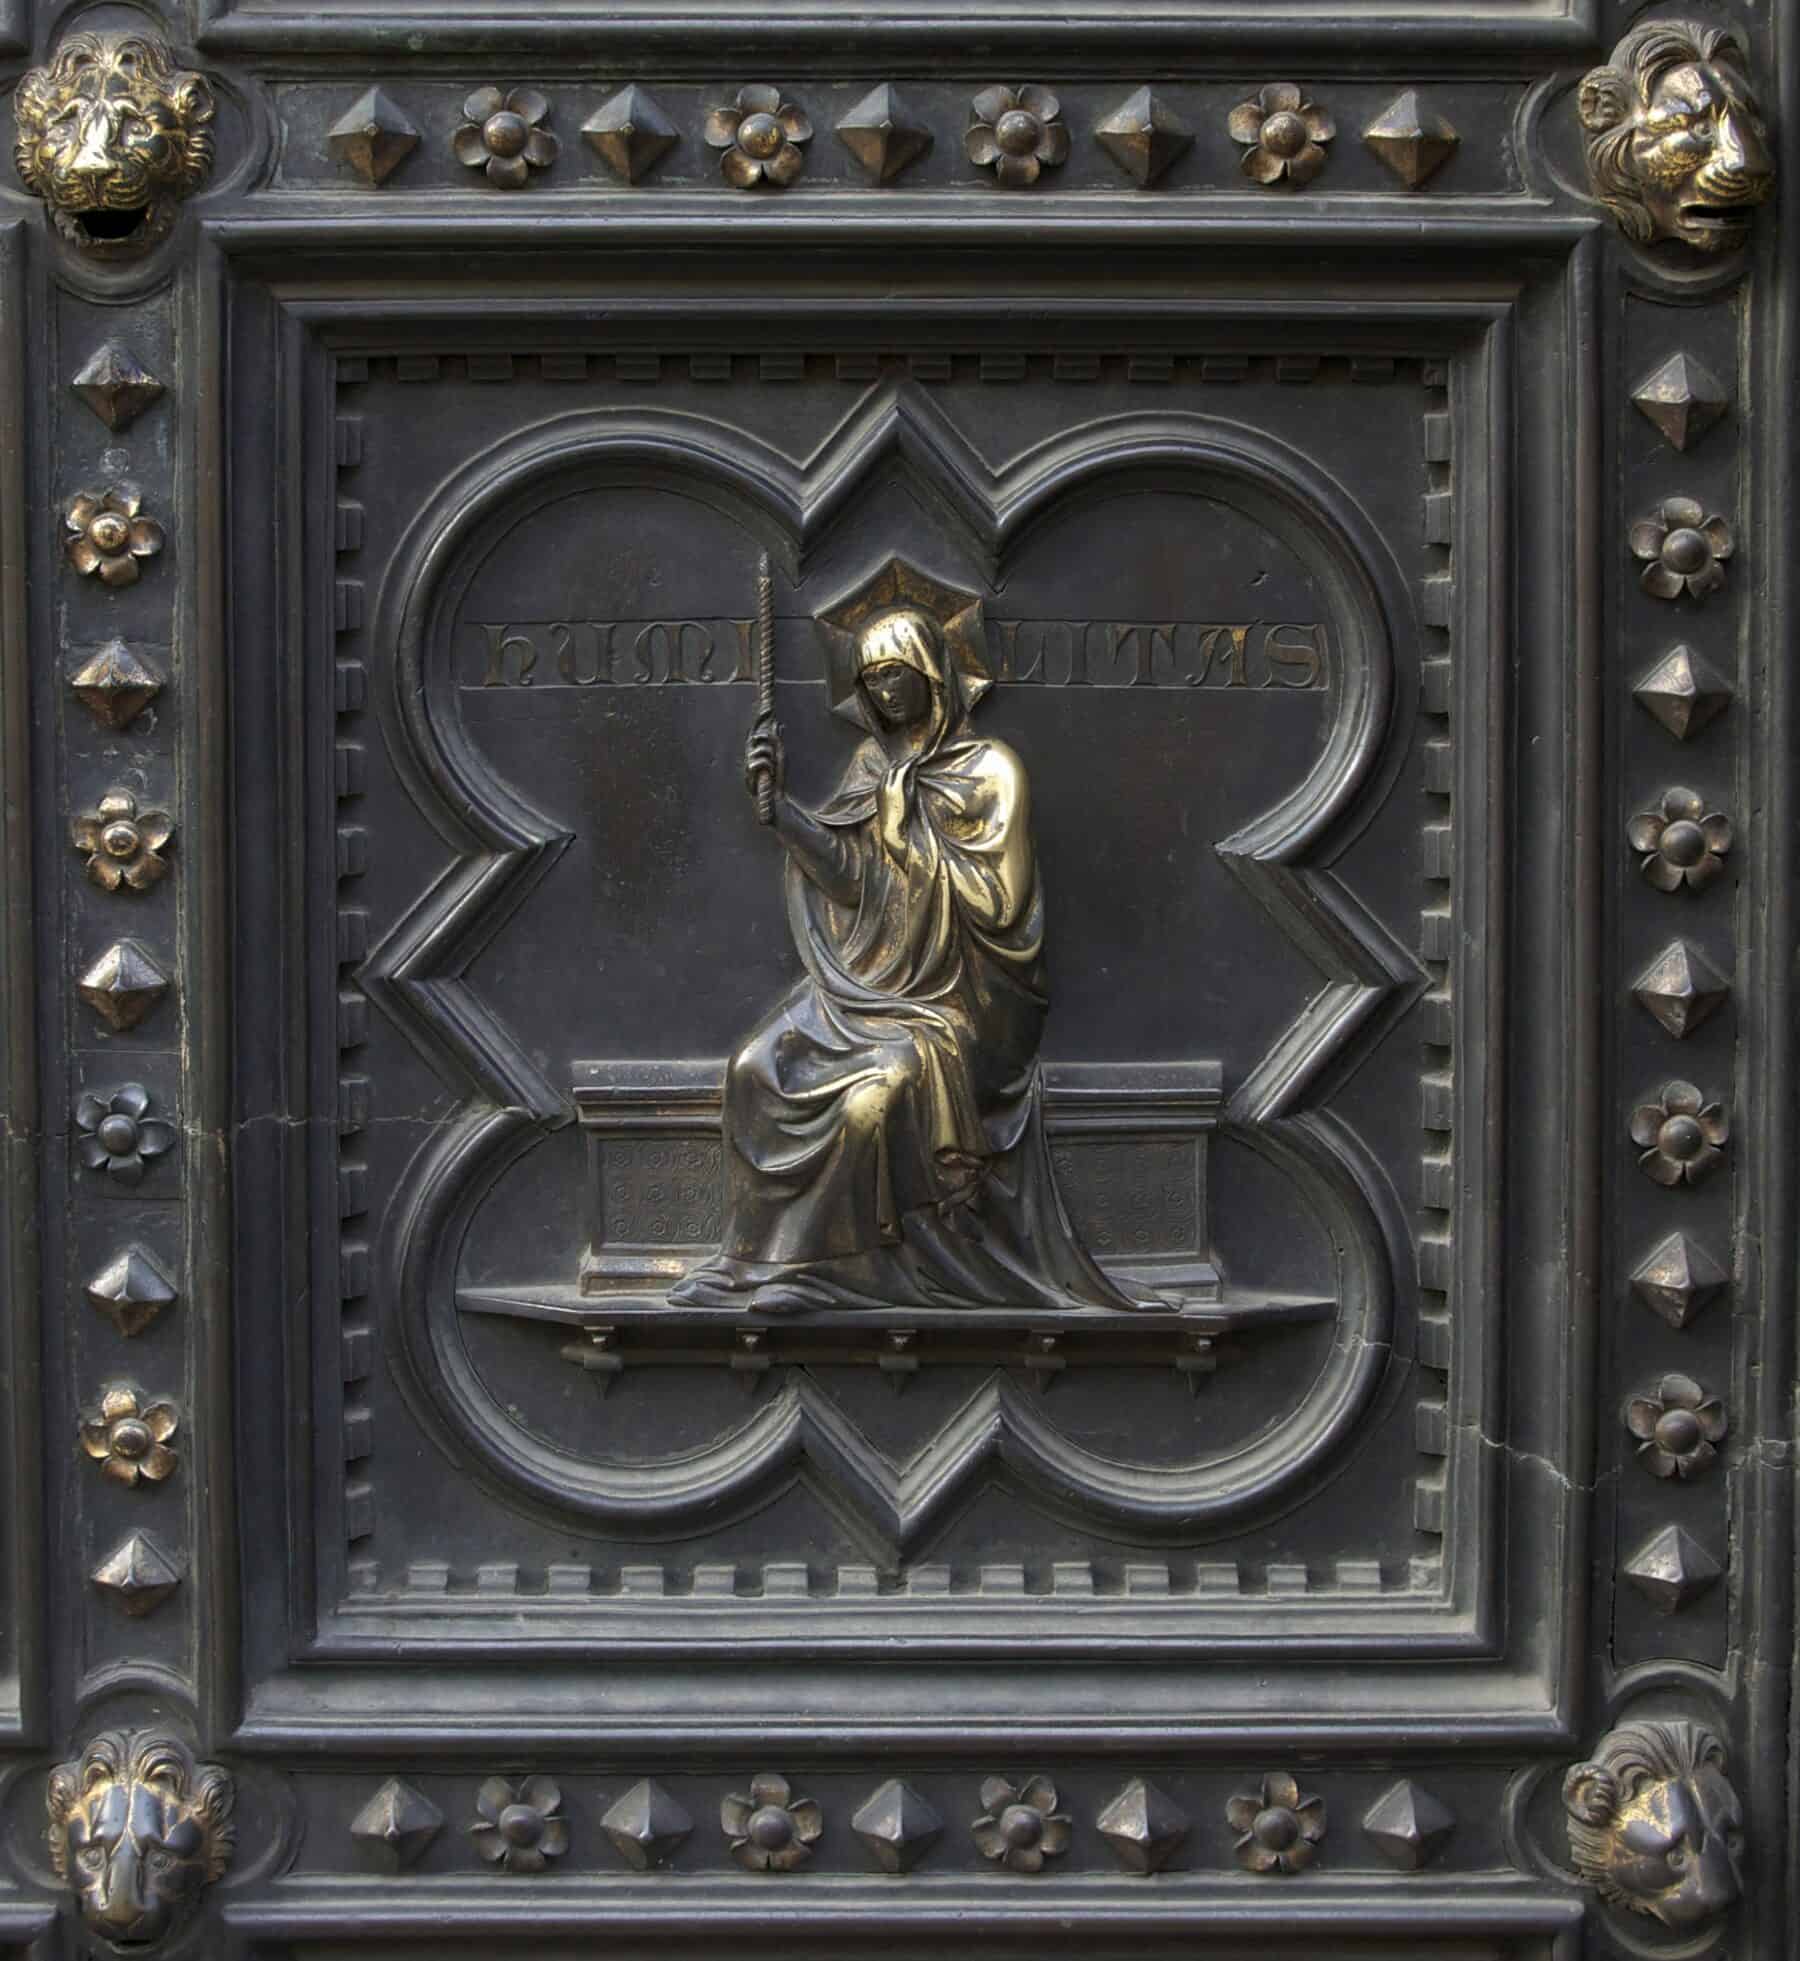 Baptistery & Bronze Doors | Jebulon / CC0